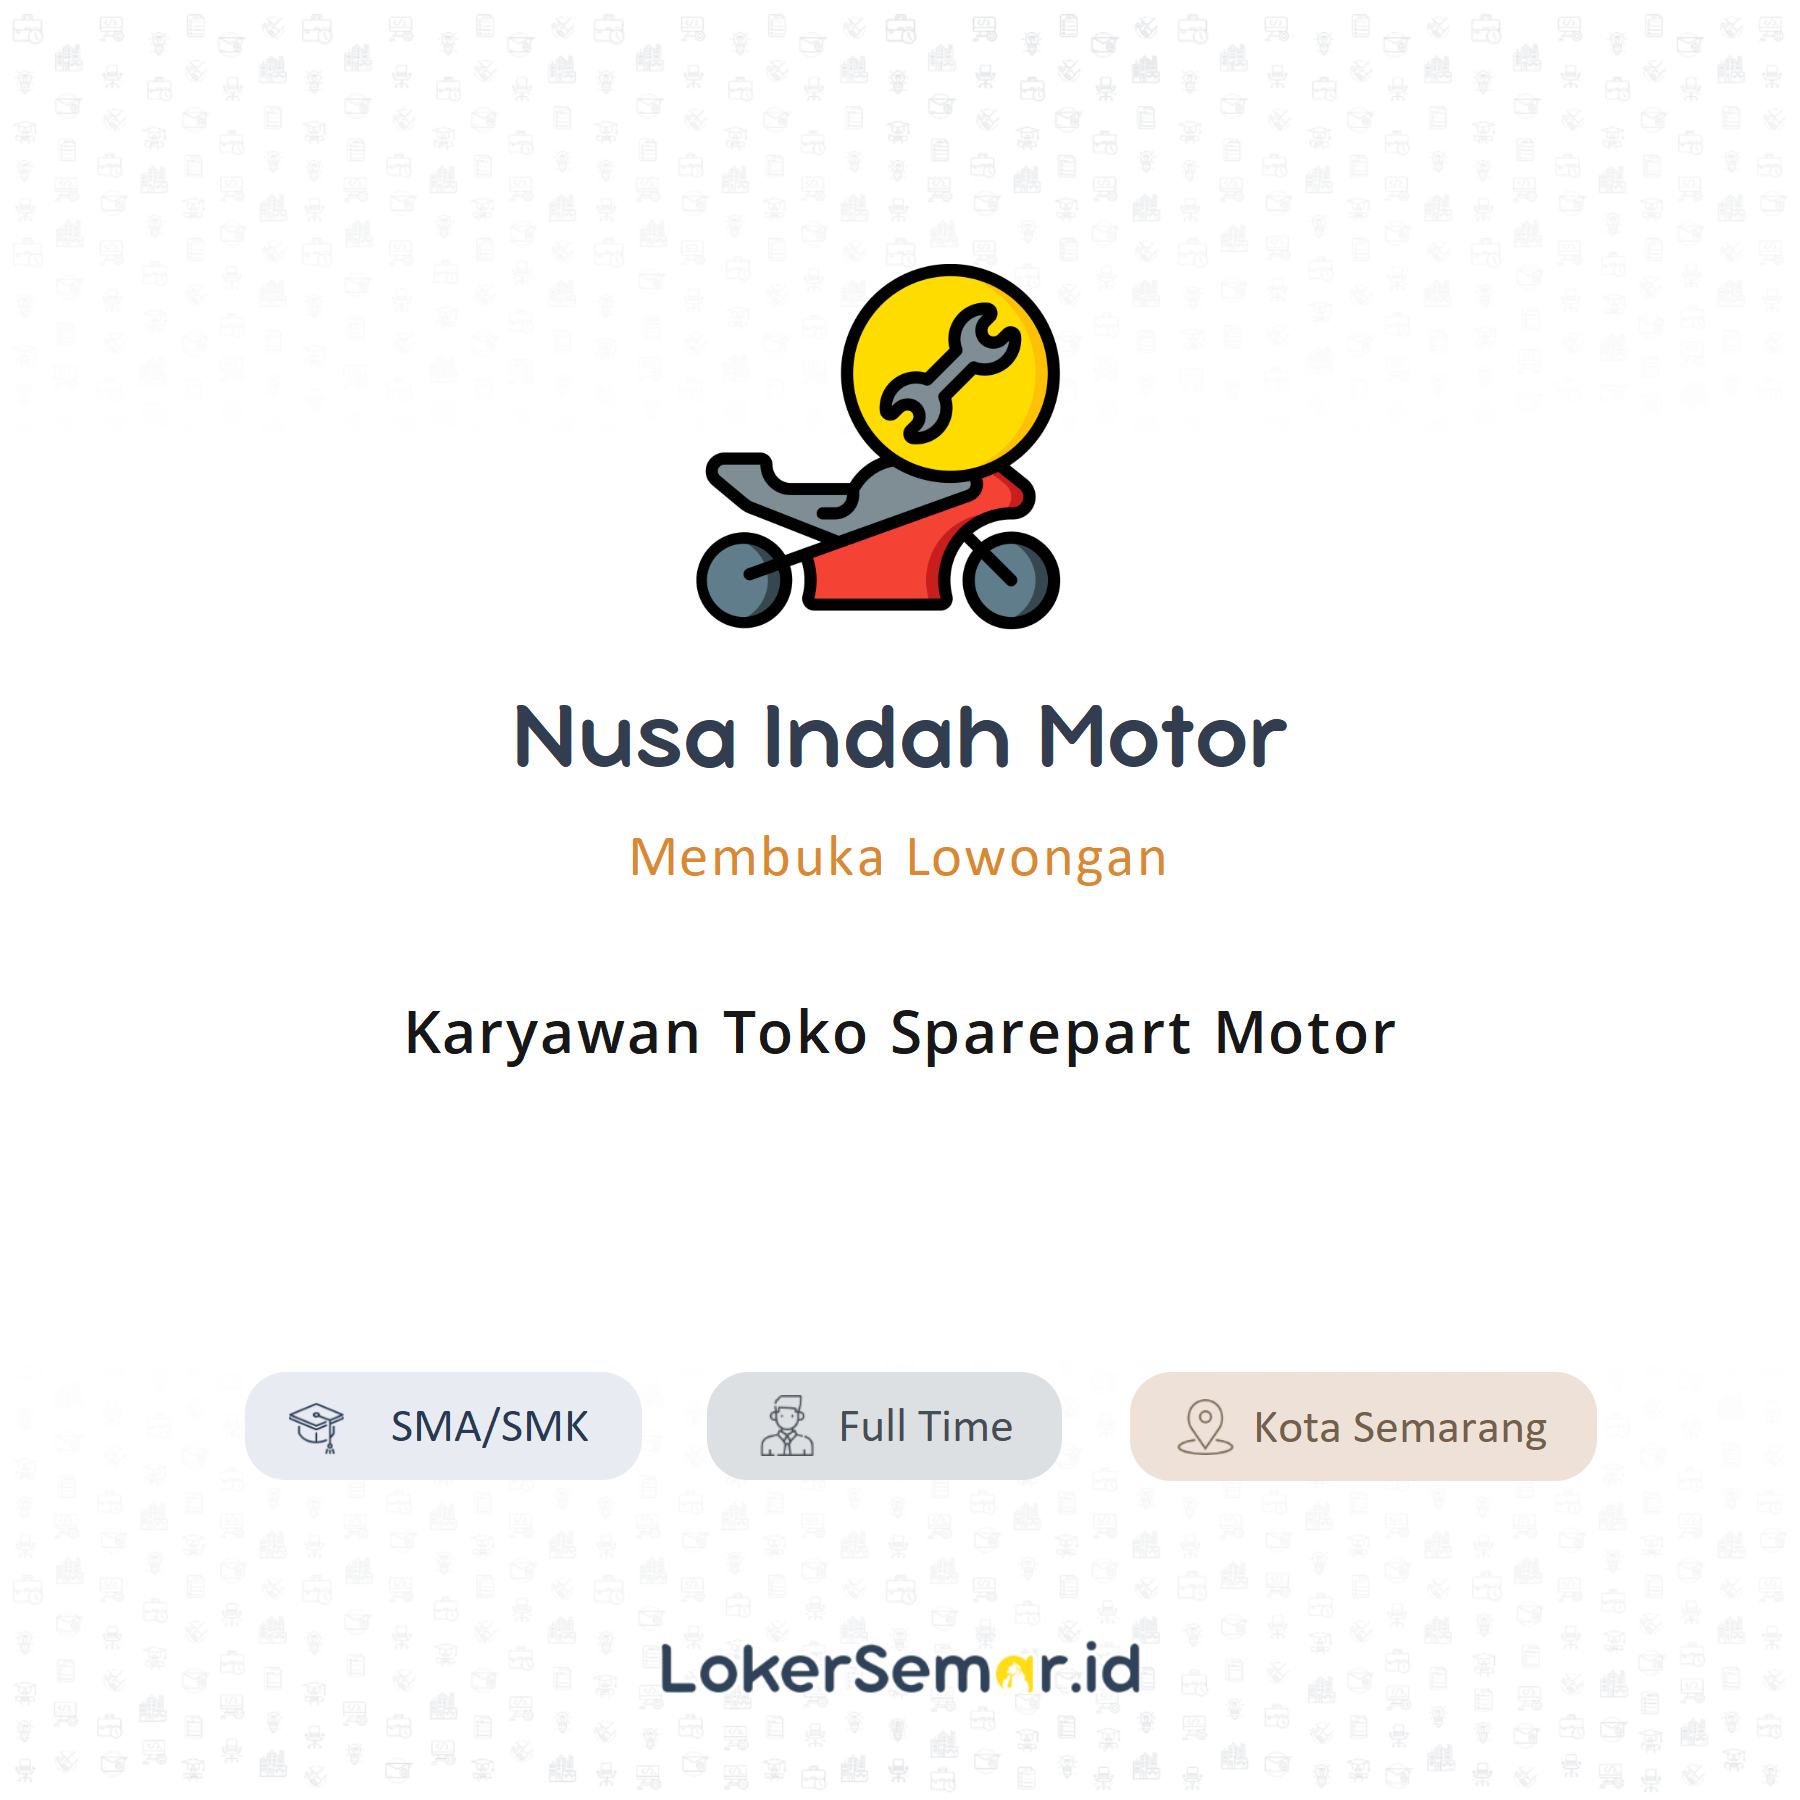 [Nusa Indah Motor – Karyawan Toko Sparepart Motor]